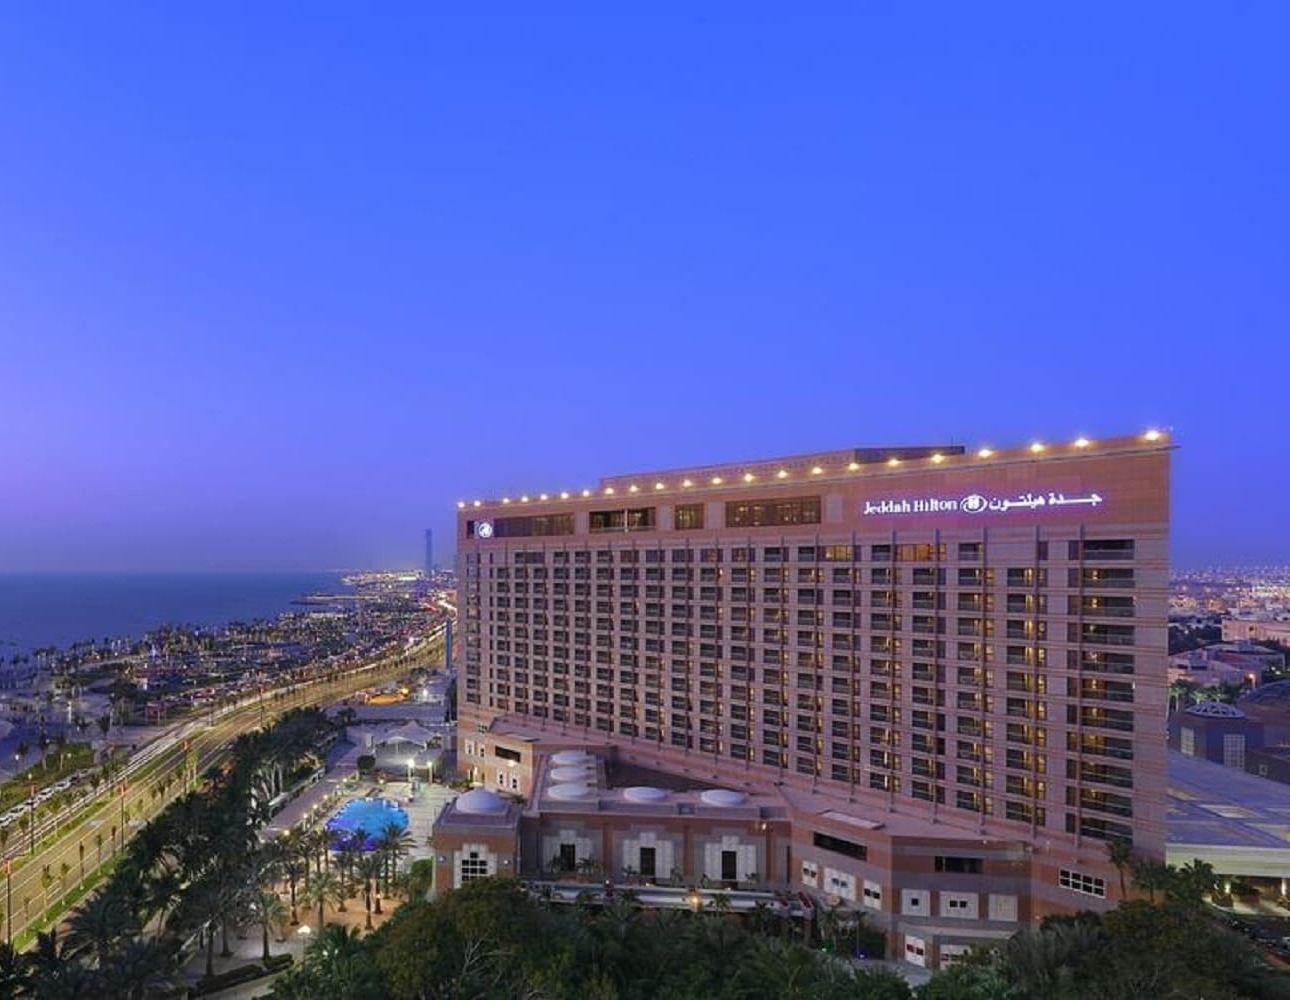 Jeddah Hilton 5